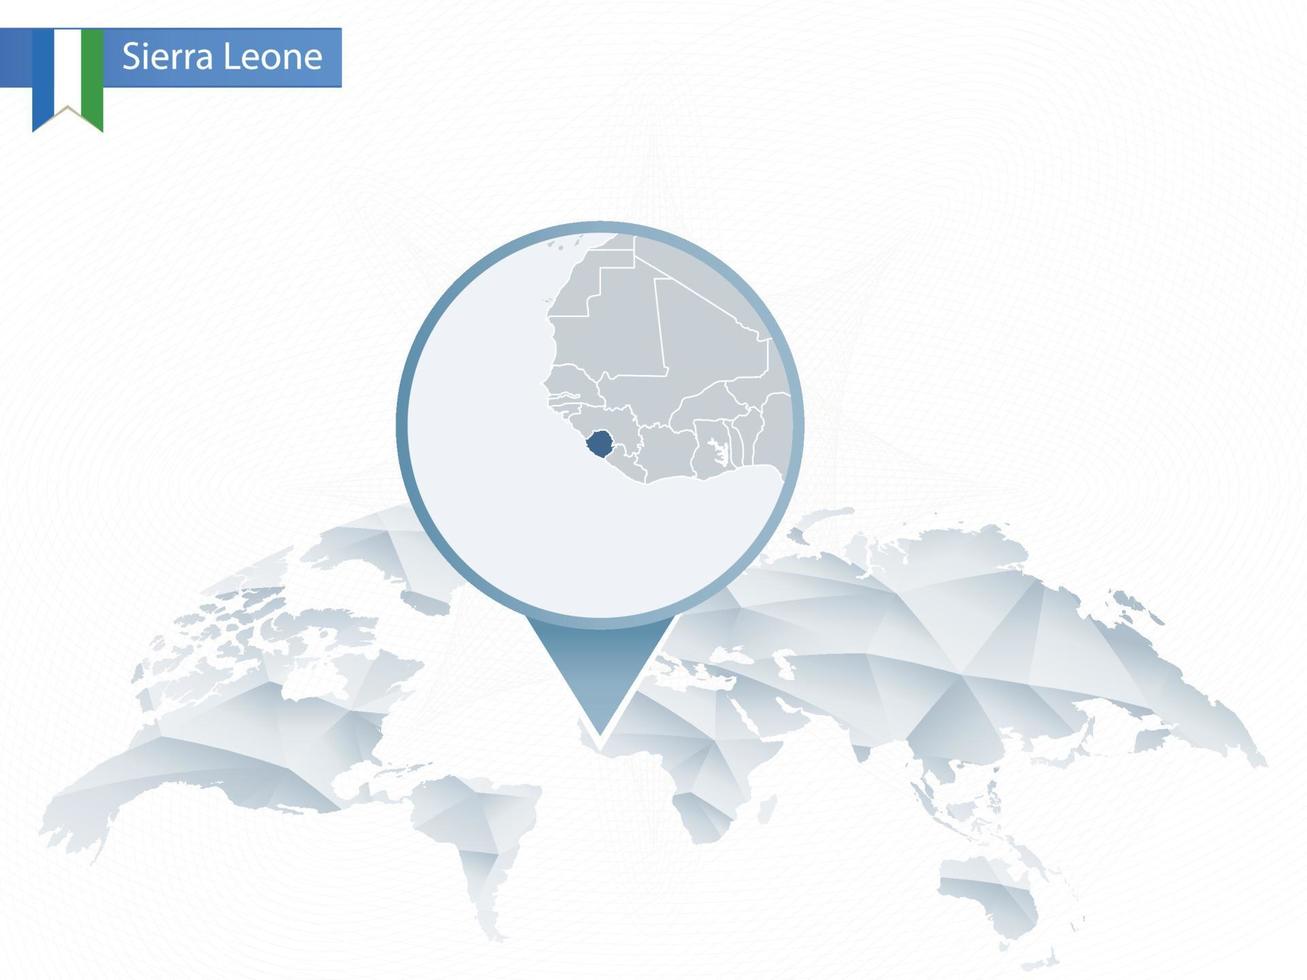 abstrakt rundad världskarta med nålade detaljerad Sierra leone karta. vektor